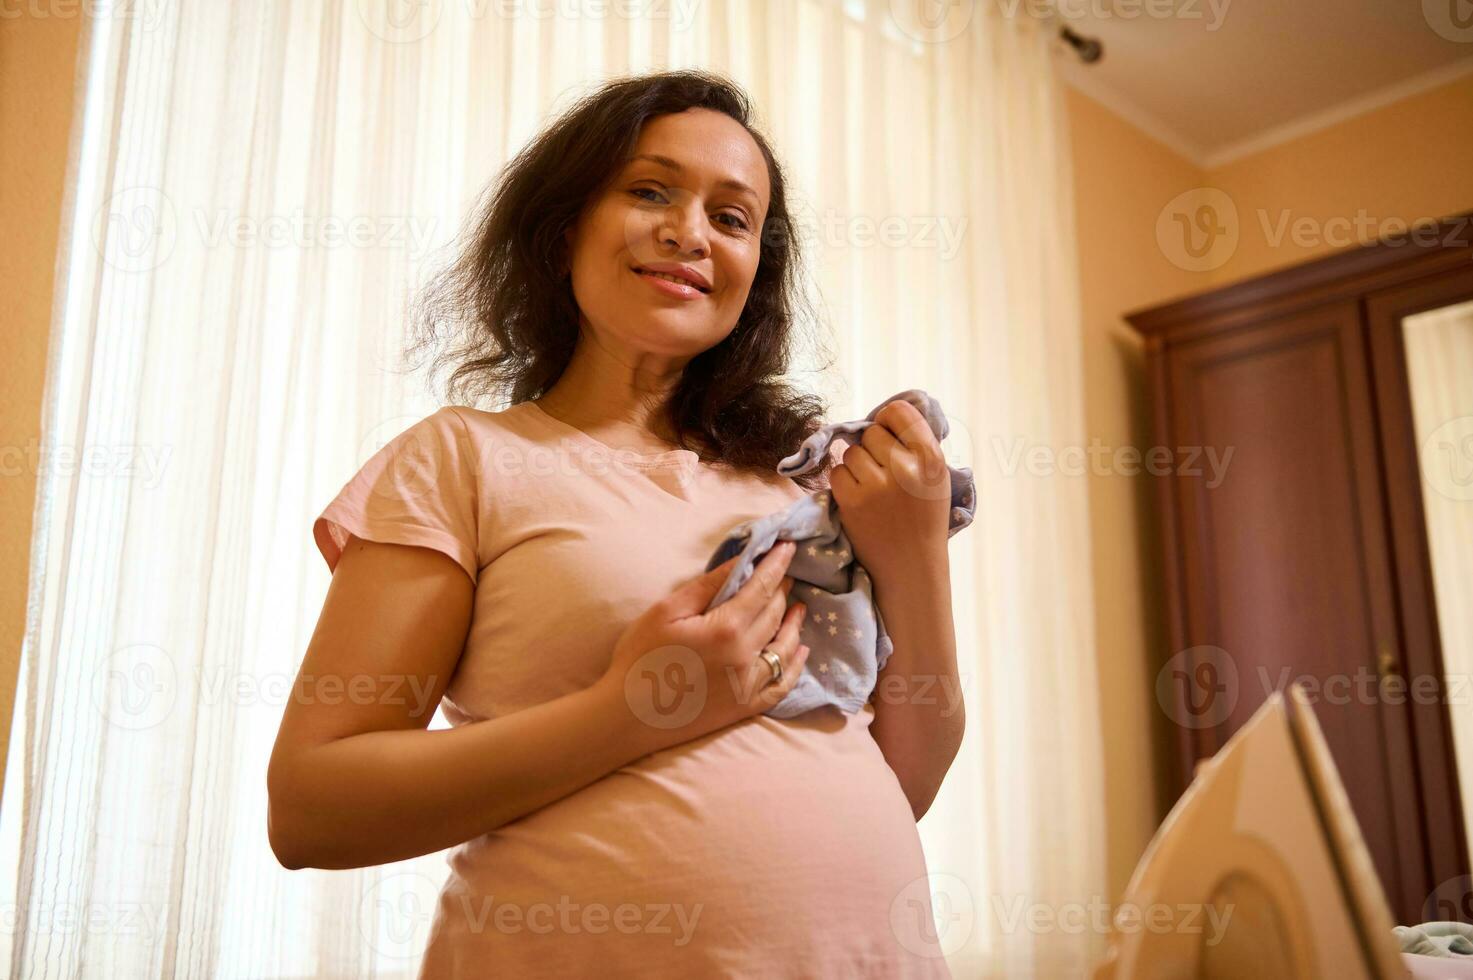 de verwachtend moeder is aan het wachten en voorbereidingen treffen voor de geboorte van een kind Bij huis, glimlachen Bij camera, Holding baby bodysuit foto